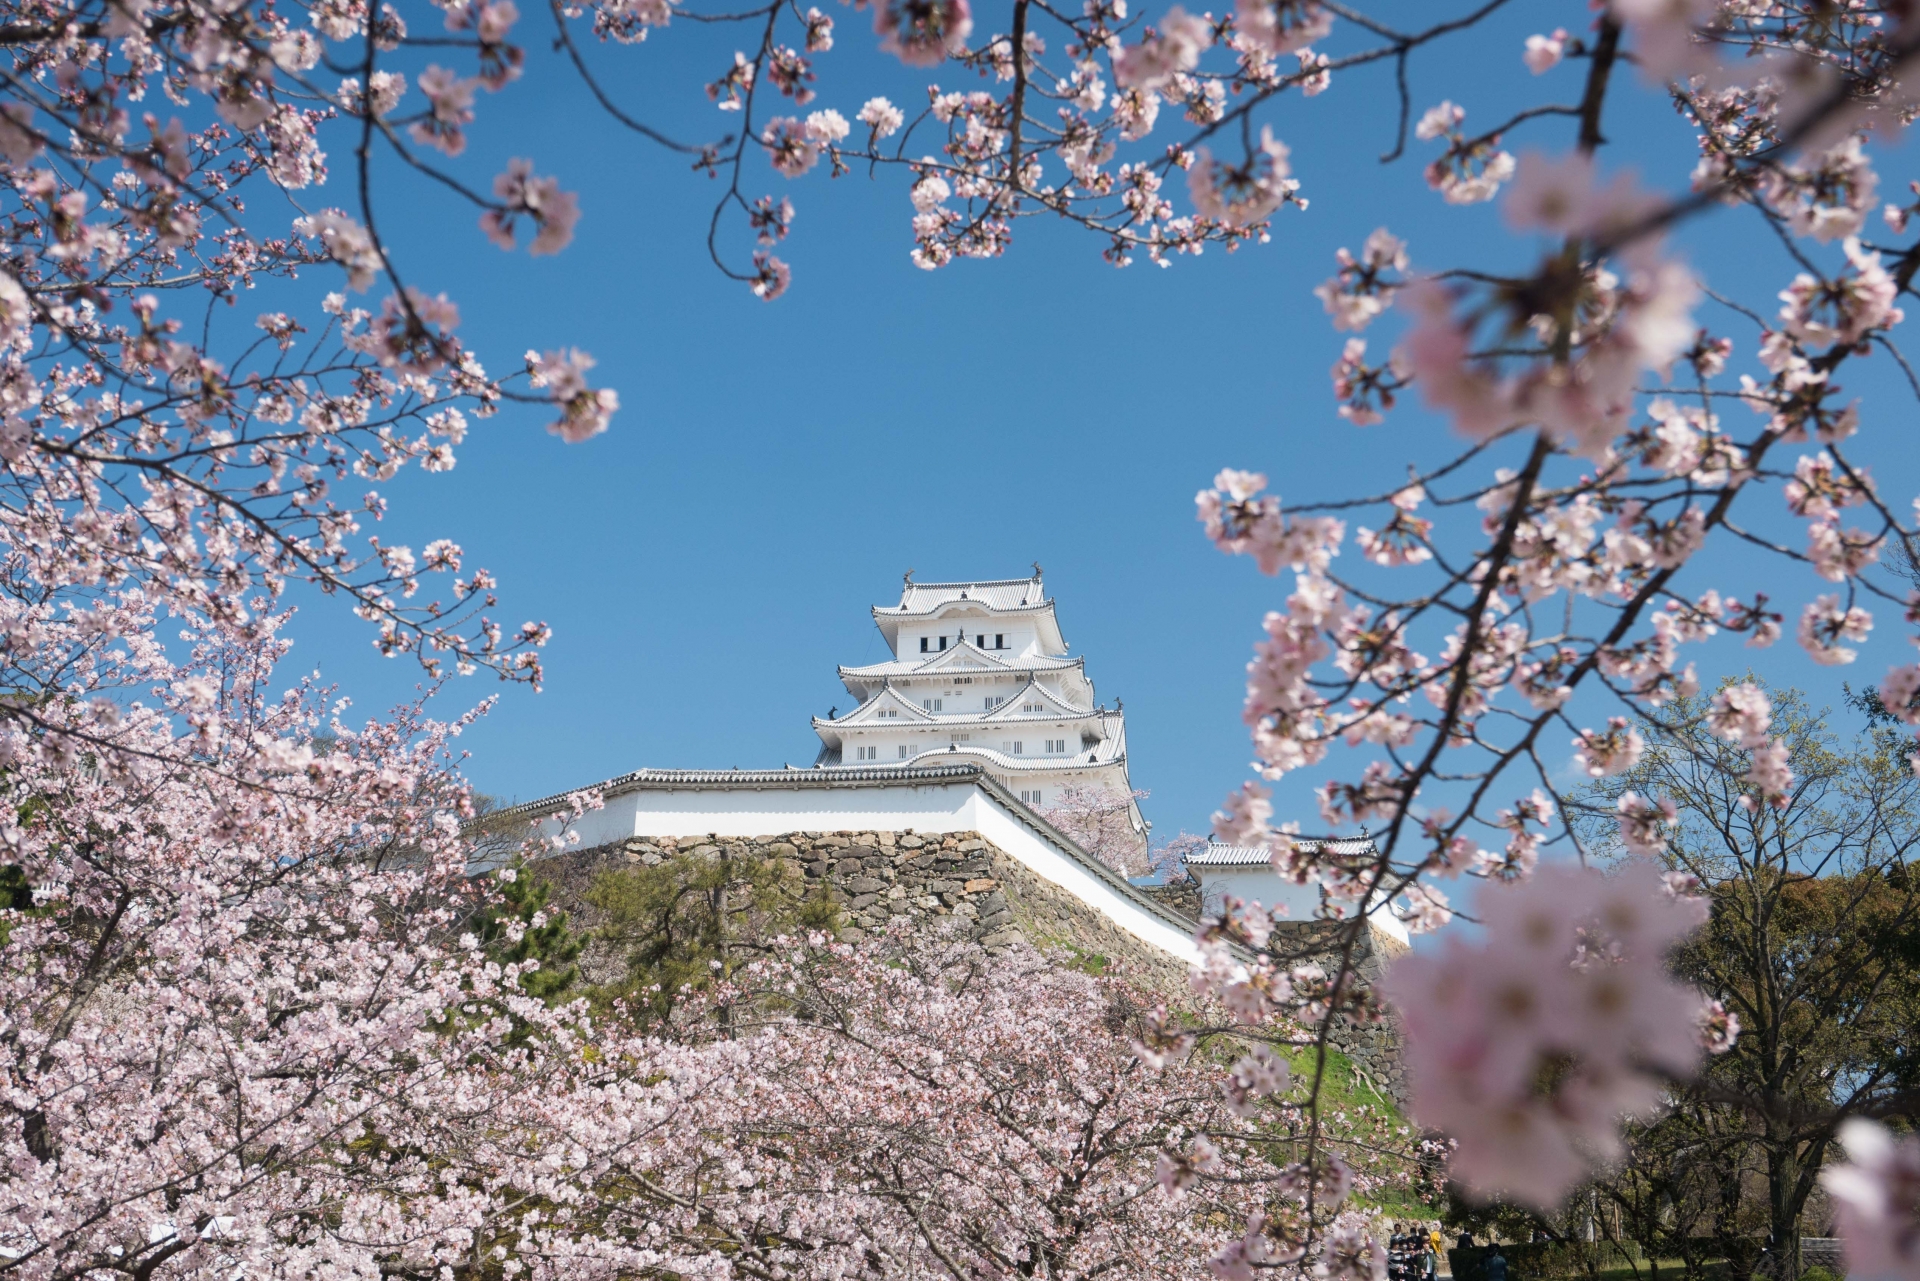 姫路城の桜まつり21 開花状況やライトアップなど紹介 情報発信ブログサイト Blue Rose